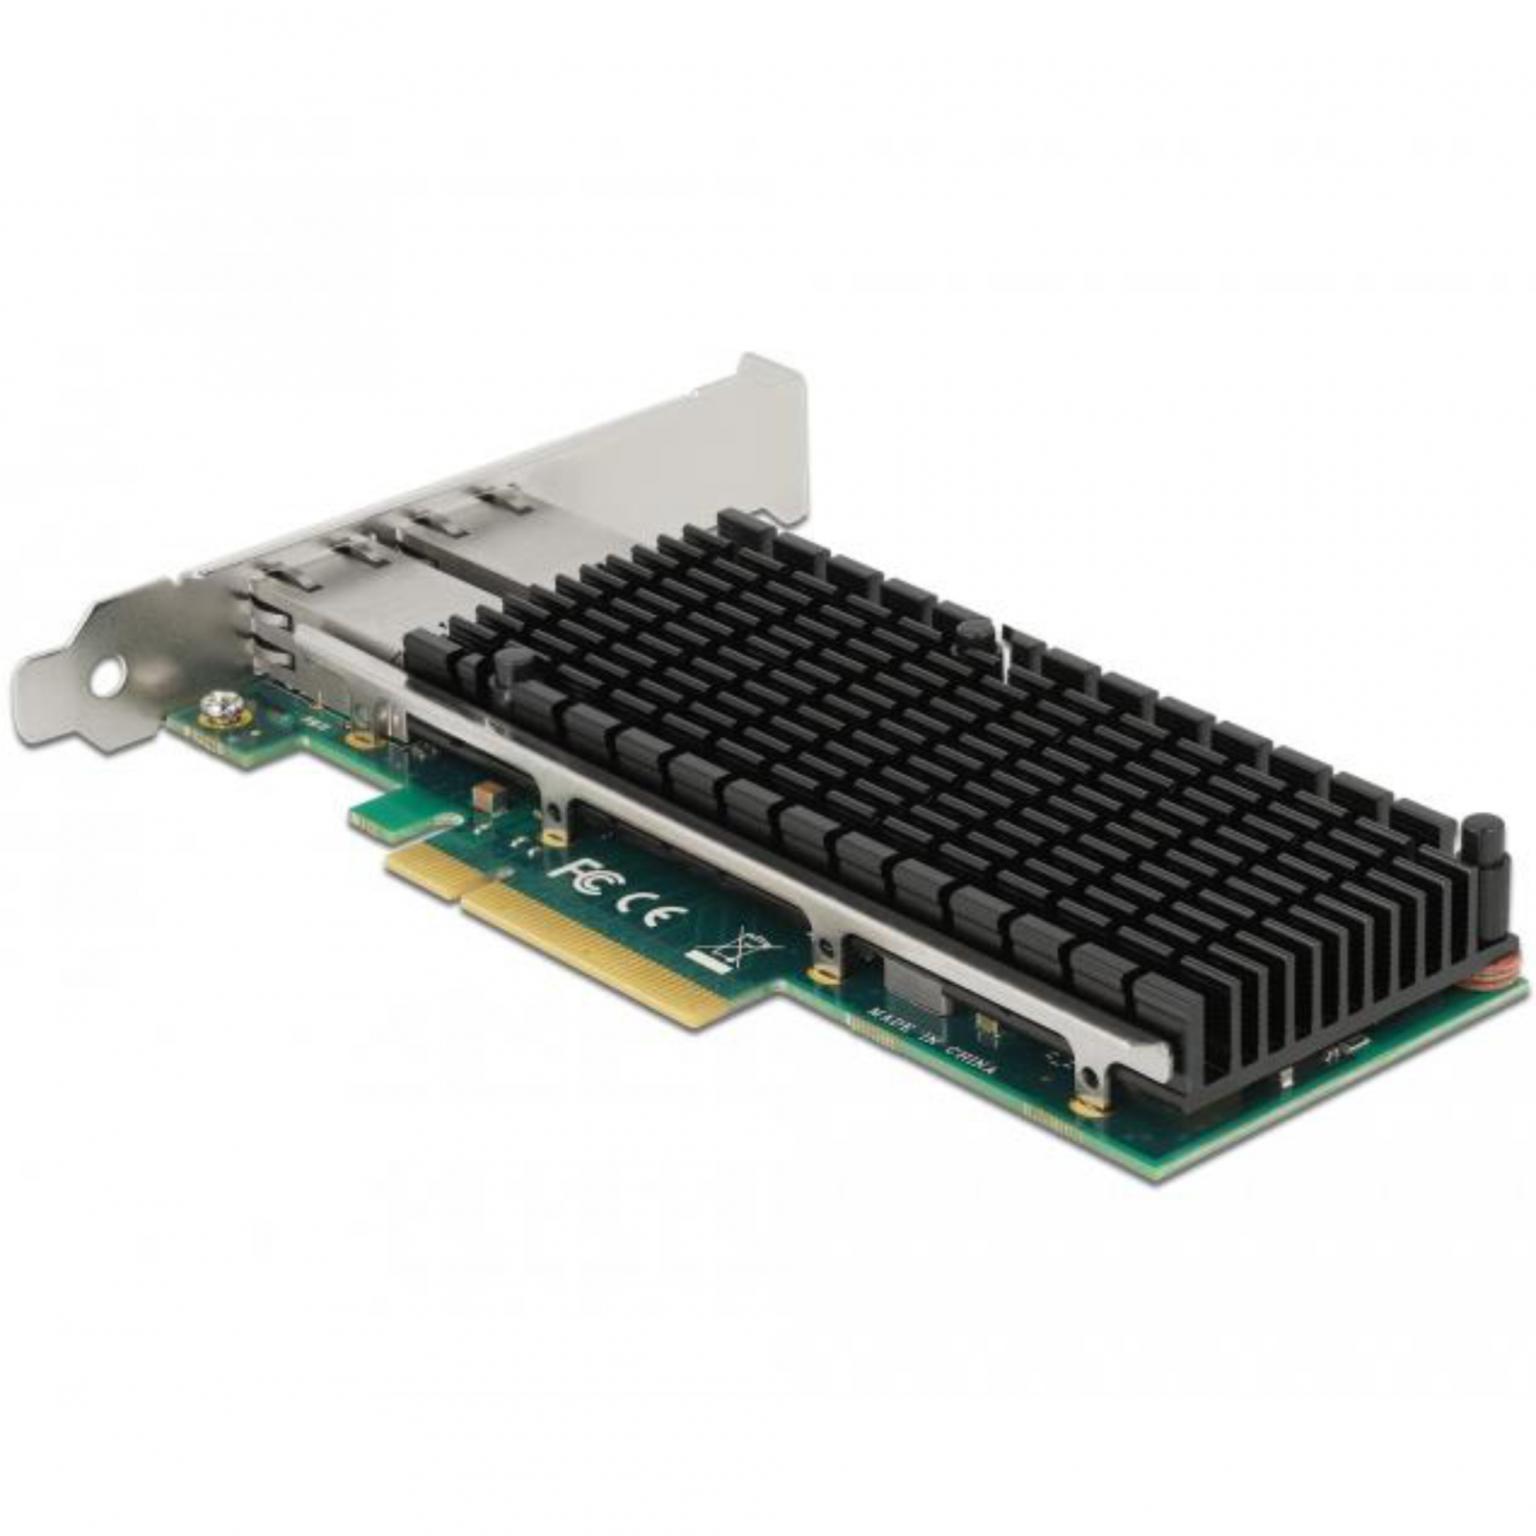 Carte réseau PCIe GIGABIT ETHERNET 2 ports - INTEL I82576 - Low